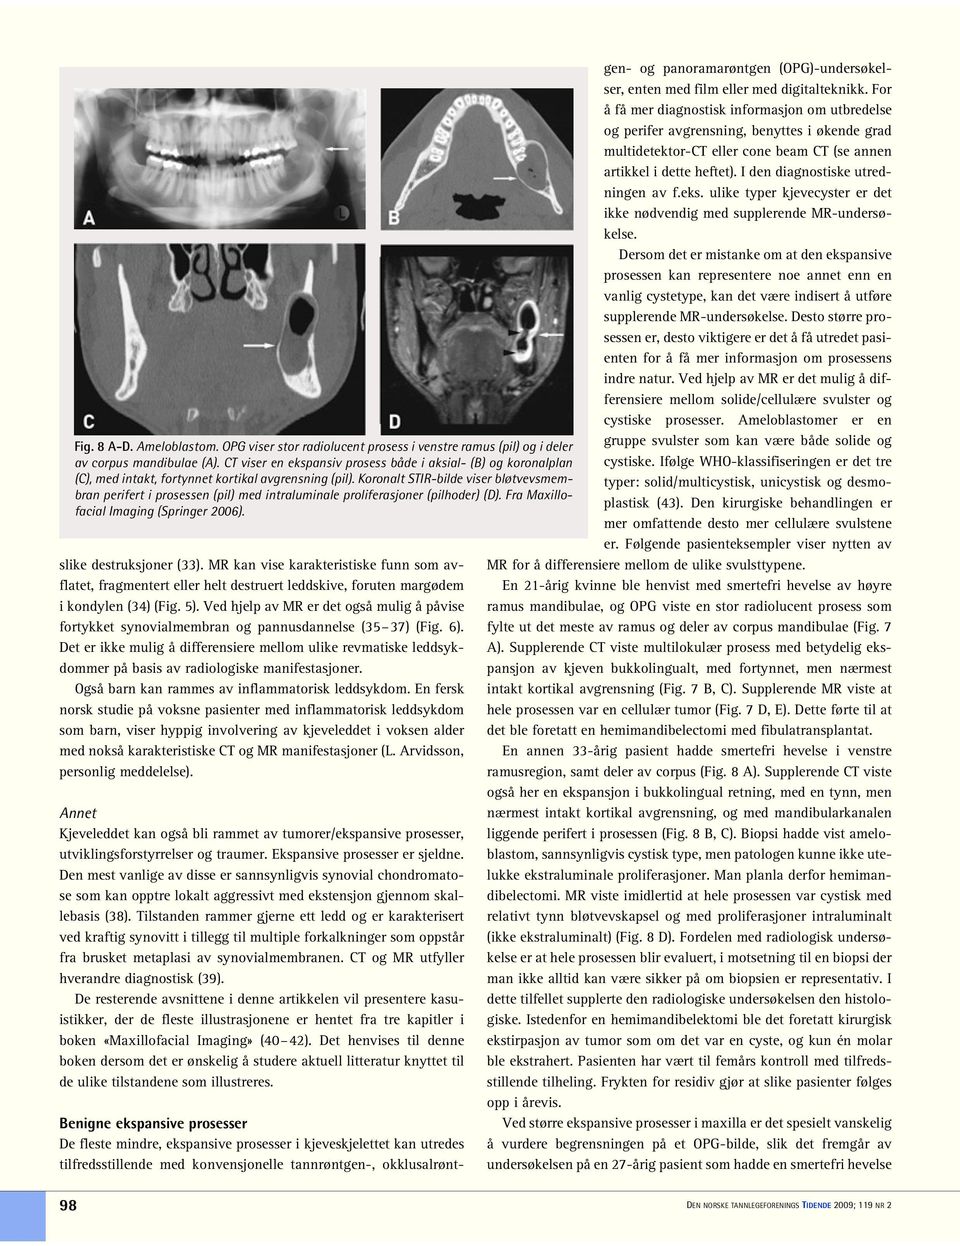 Koronalt STIR-bilde viser bløtvevsmembran perifert i prosessen (pil) med intraluminale proliferasjoner (pilhoder) (D). Fra Maxillofacial Imaging (Springer 2006). slike destruksjoner (33).